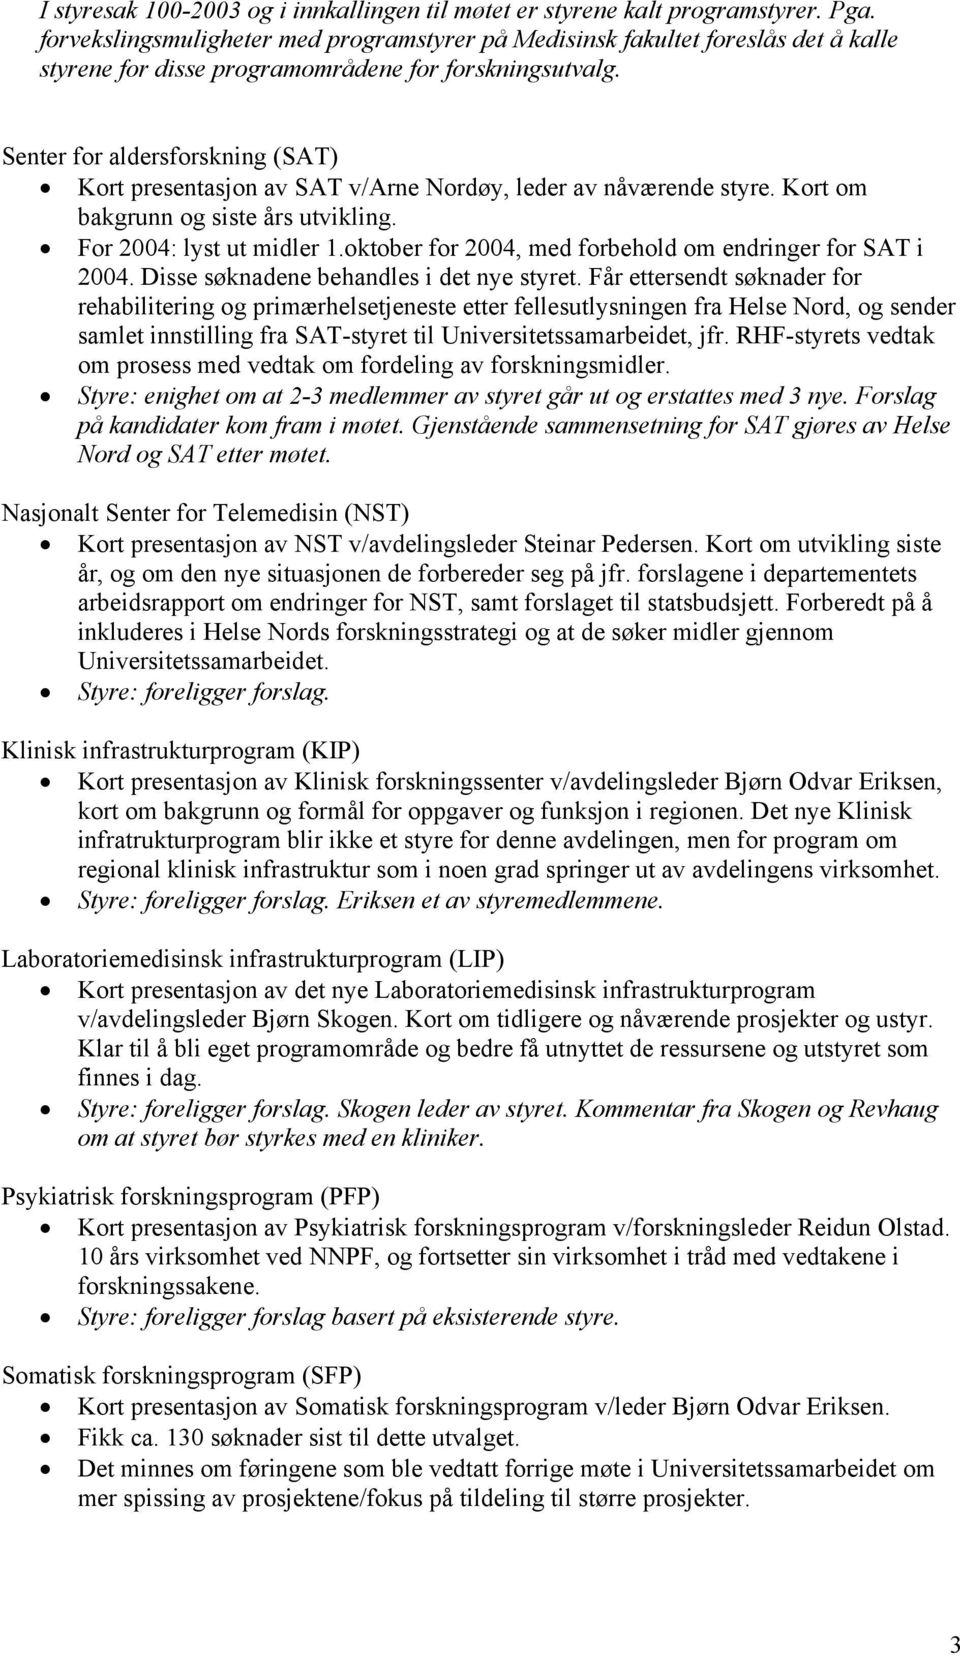 Senter for aldersforskning (SAT) Kort presentasjon av SAT v/arne Nordøy, leder av nåværende styre. Kort om bakgrunn og siste års utvikling. For 2004: lyst ut midler 1.